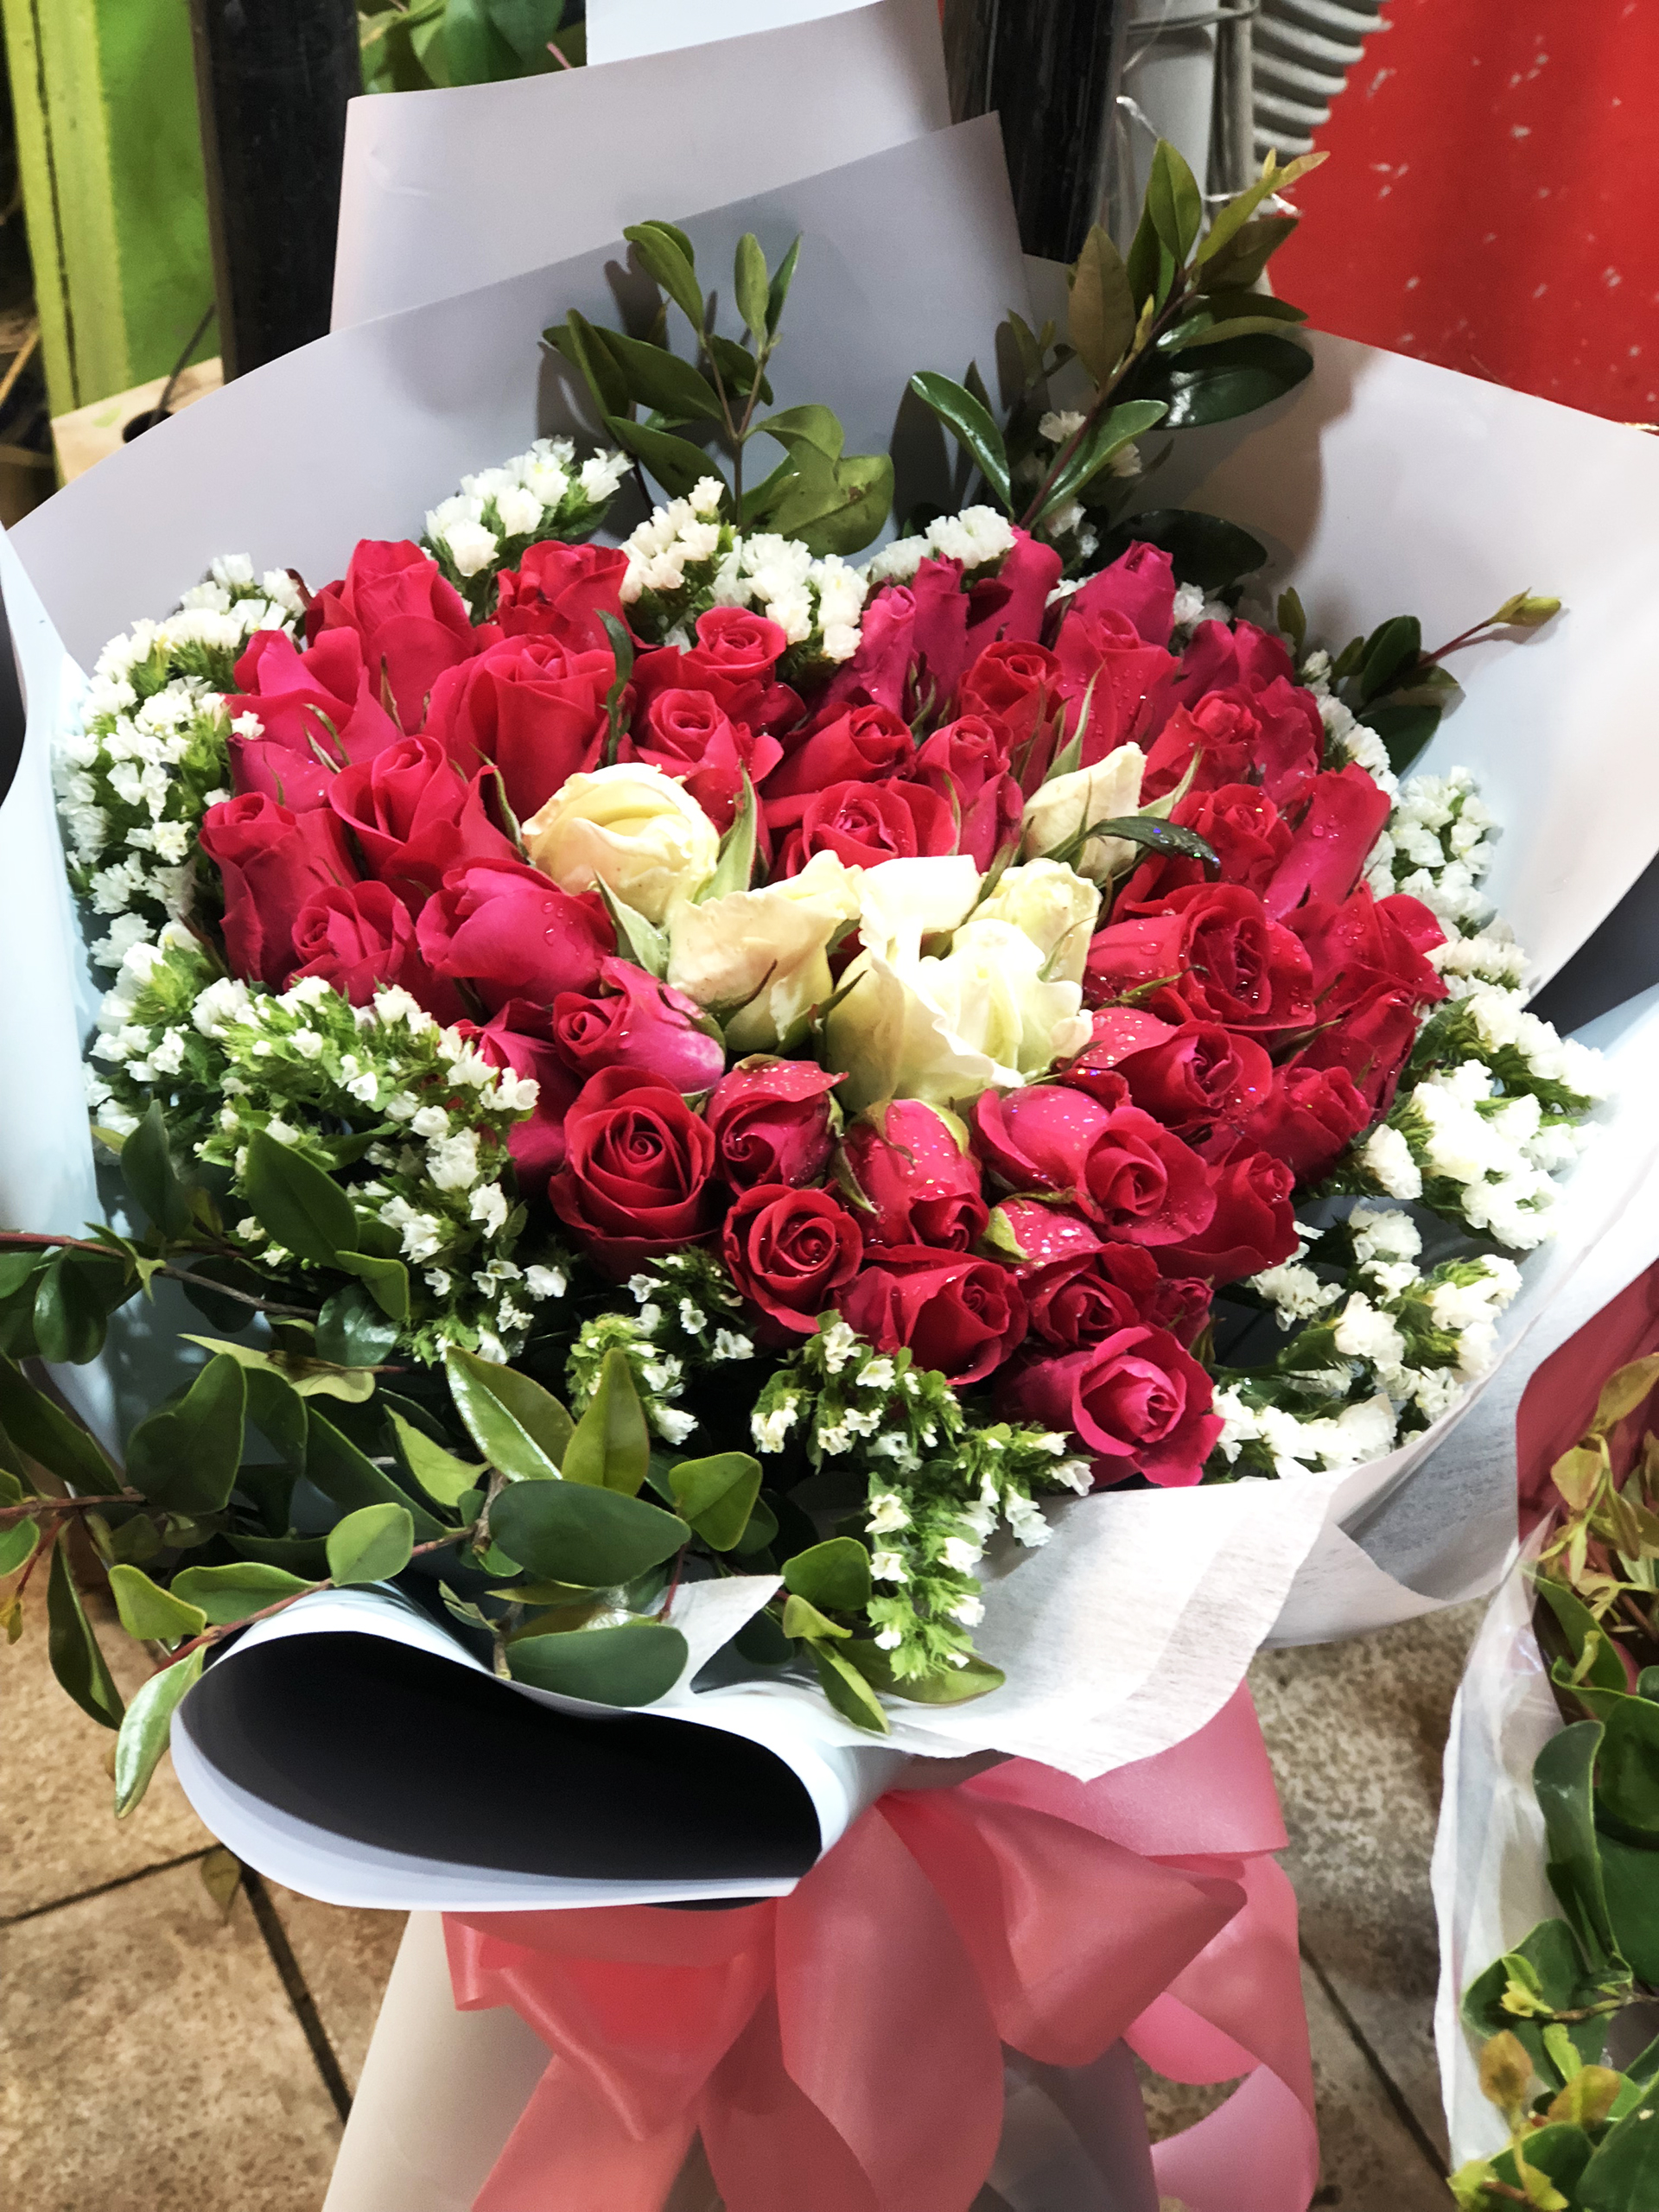 Hoa Valentine là món quà đặc biệt nhất dành cho người mà bạn yêu thương nhất. Hãy cùng chiêm ngưỡng những bó hoa Valentine tuyệt đẹp để tìm kiếm cảm hứng cho một món quà lãng mạn trong ngày lễ tình yêu.